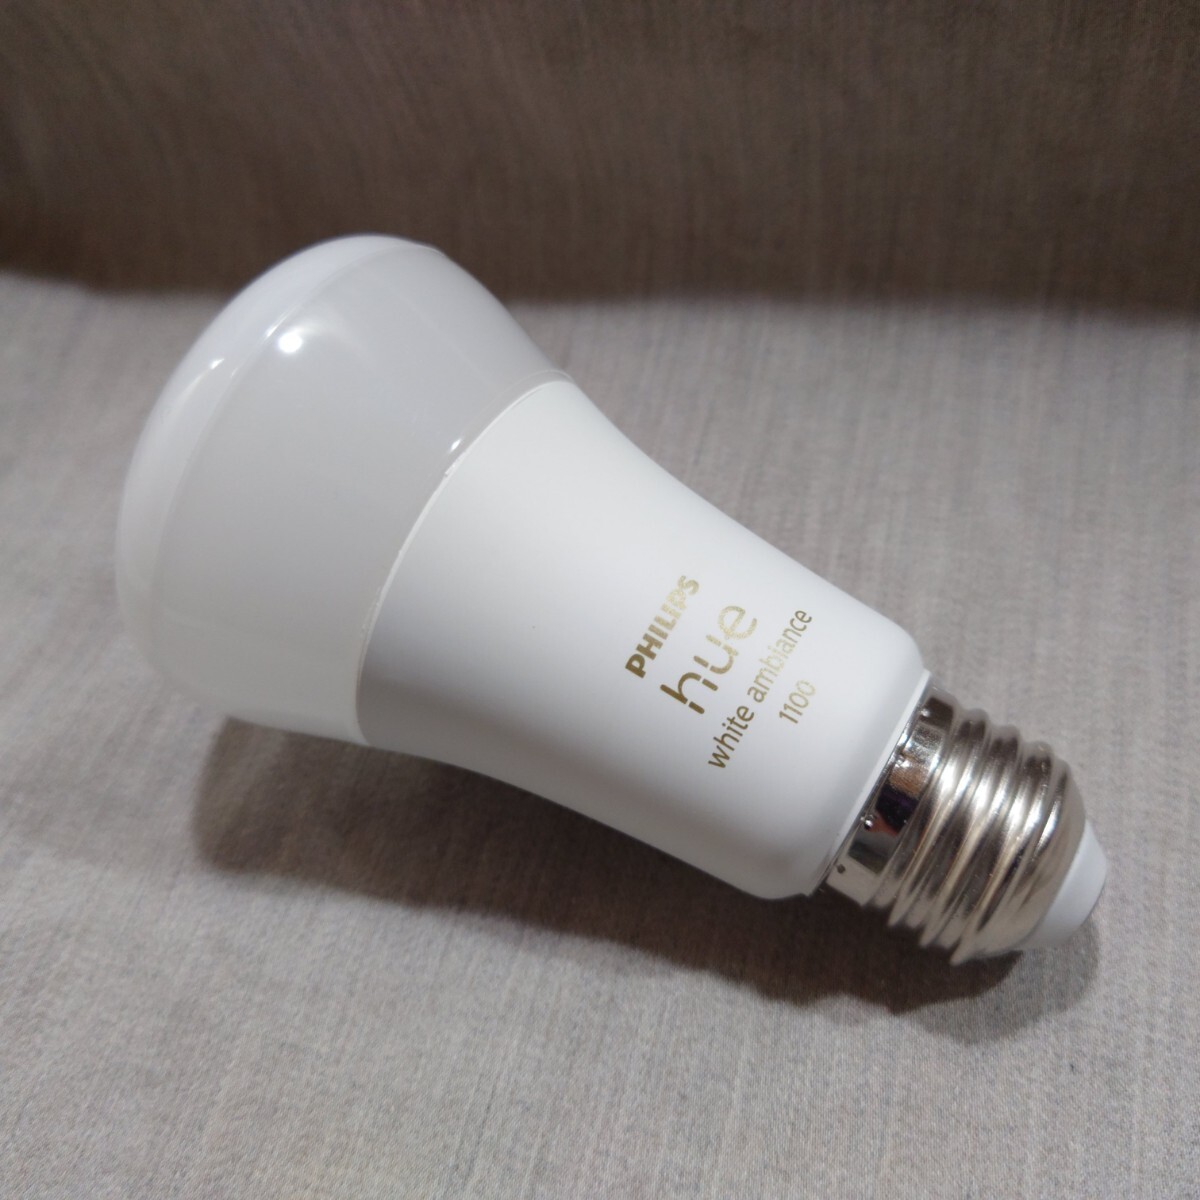 フィリップス hue E26 ホワイトグラデーション LED電球 PLH29WG 新品購入証明付きの画像2